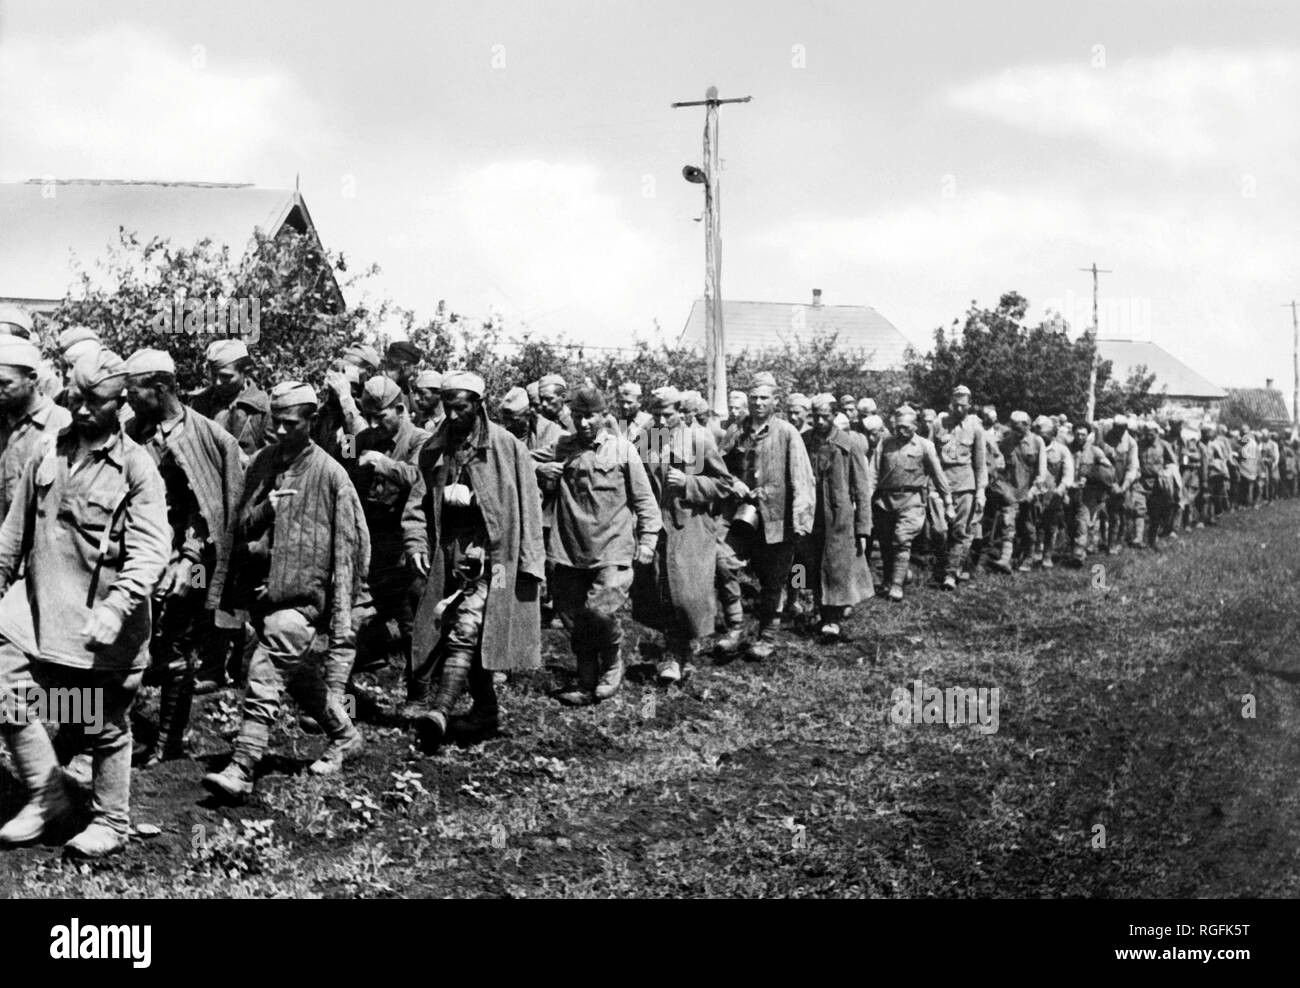 Les prisonniers russes dans les camps de concentration, la seconde guerre mondiale, 1942 Banque D'Images